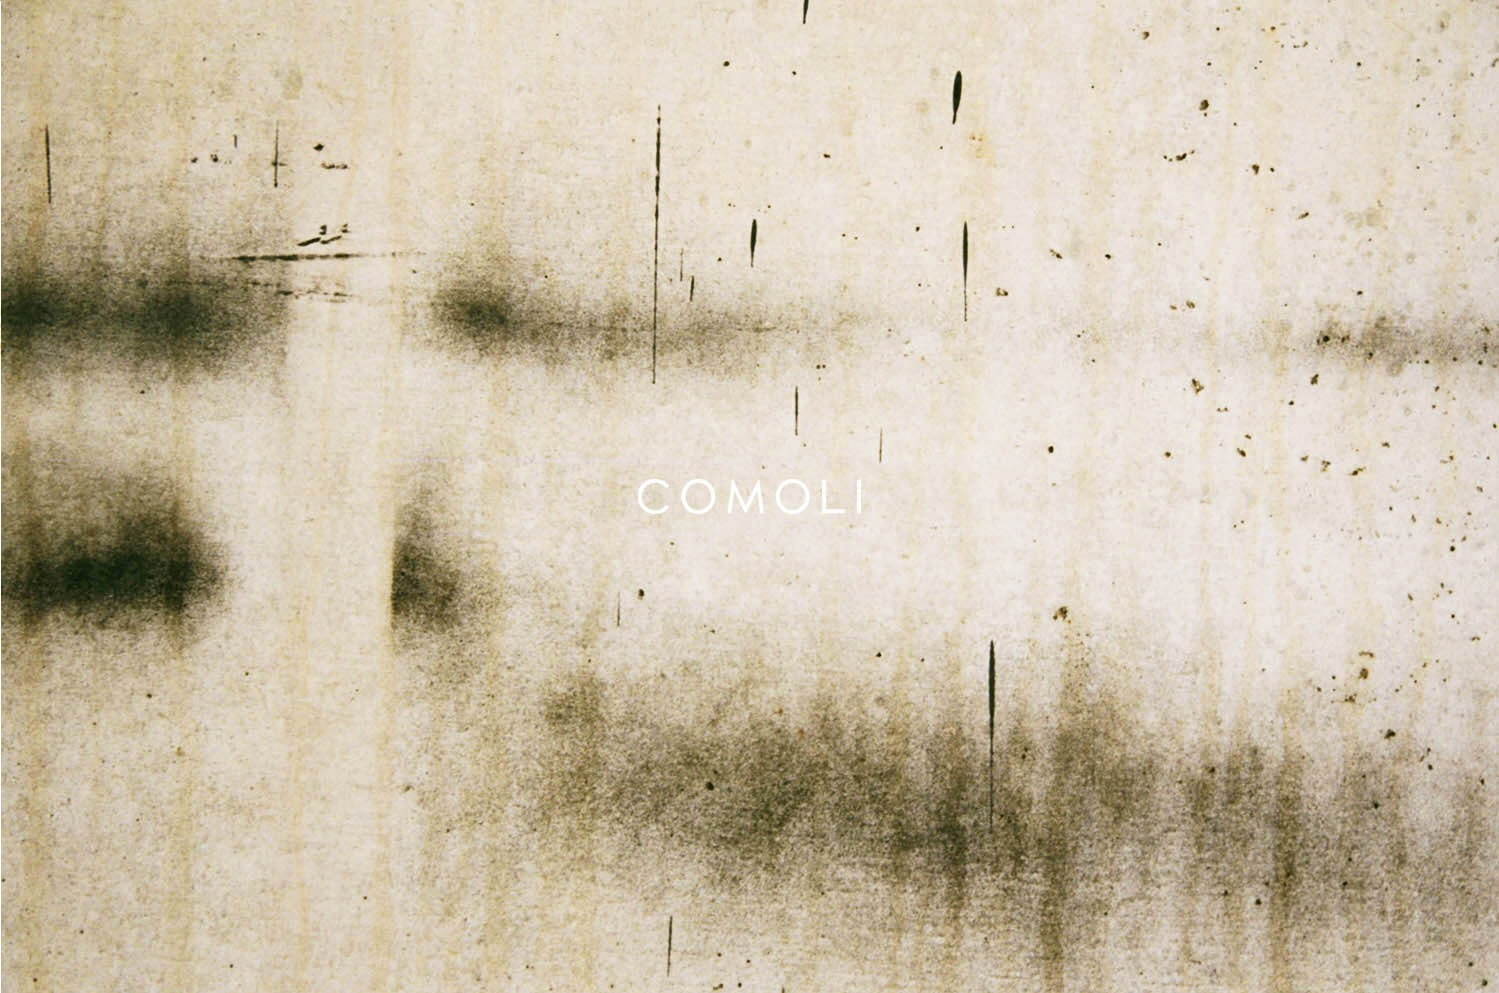 コモリ(COMOLI) 2019-20年秋冬メンズコレクション  - 写真1